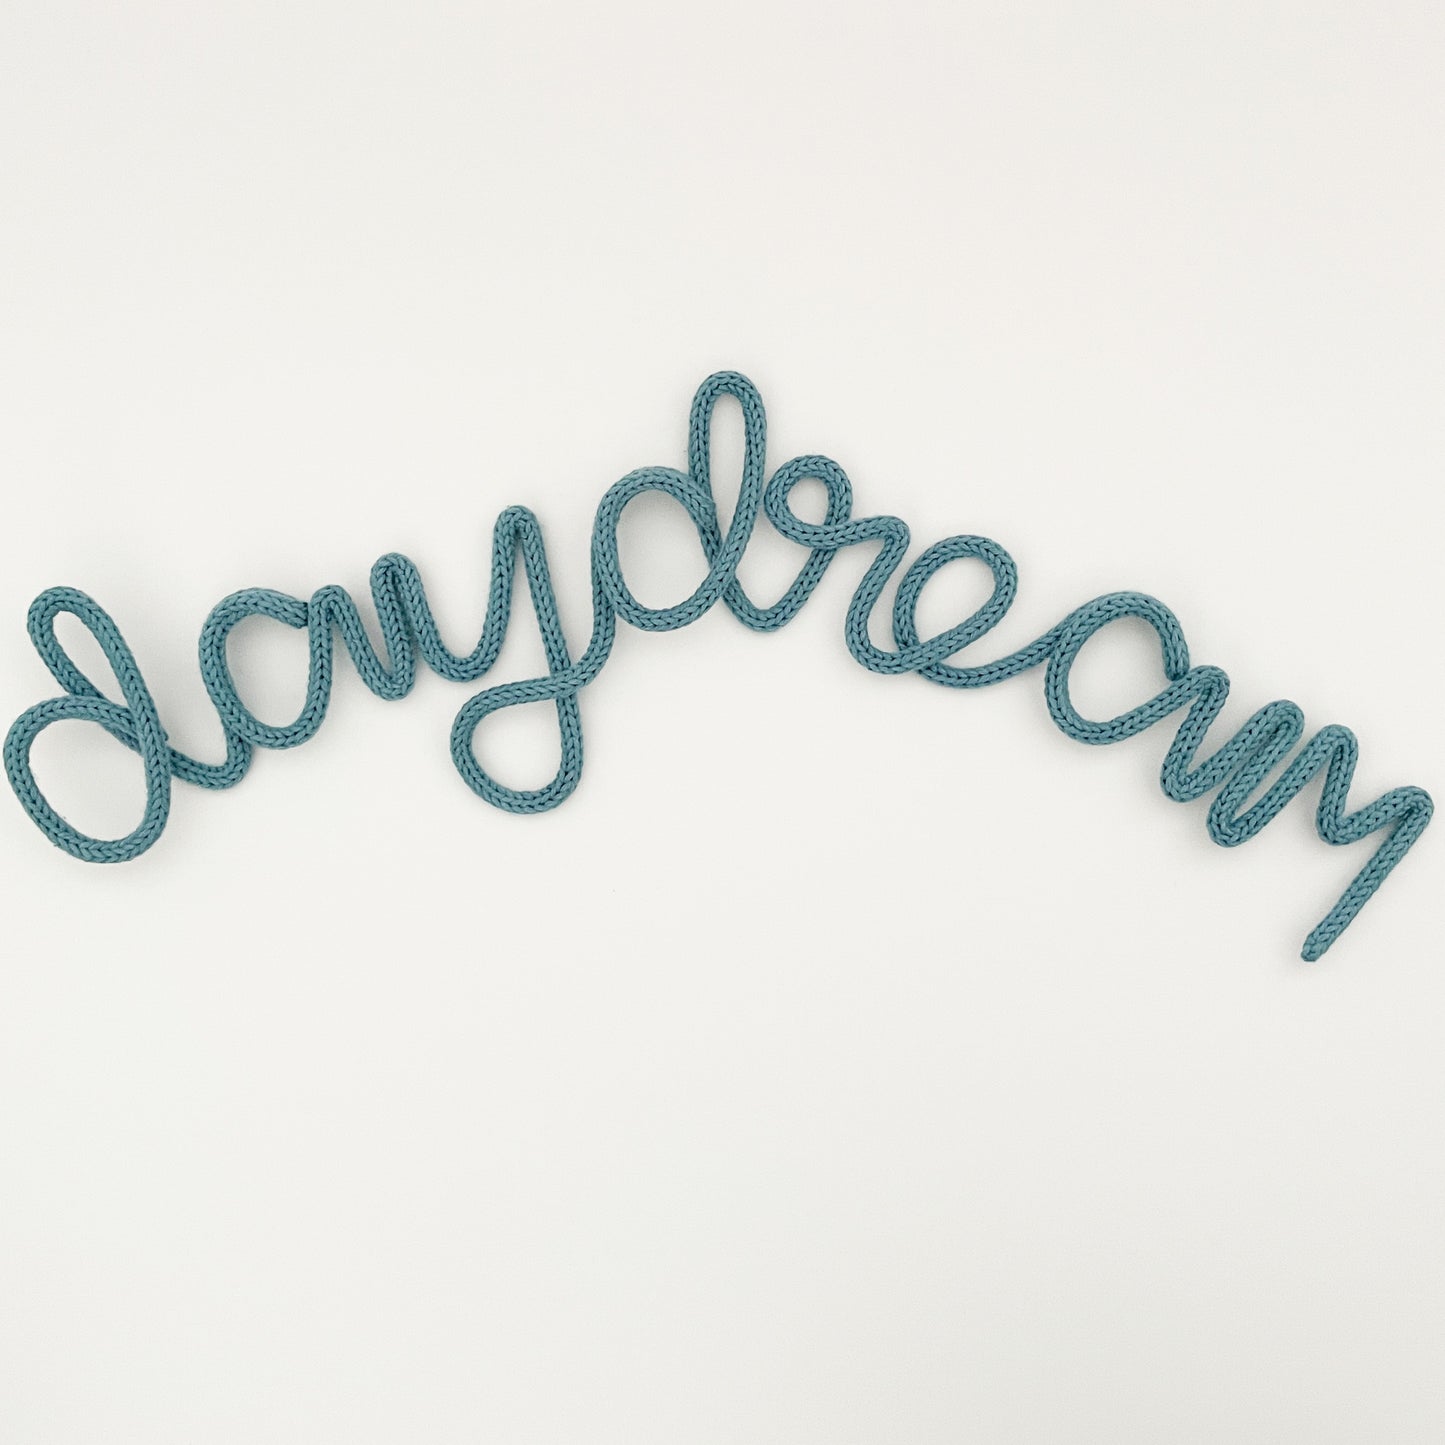 heykiddostudio 'Daydream' Word Wall Sign